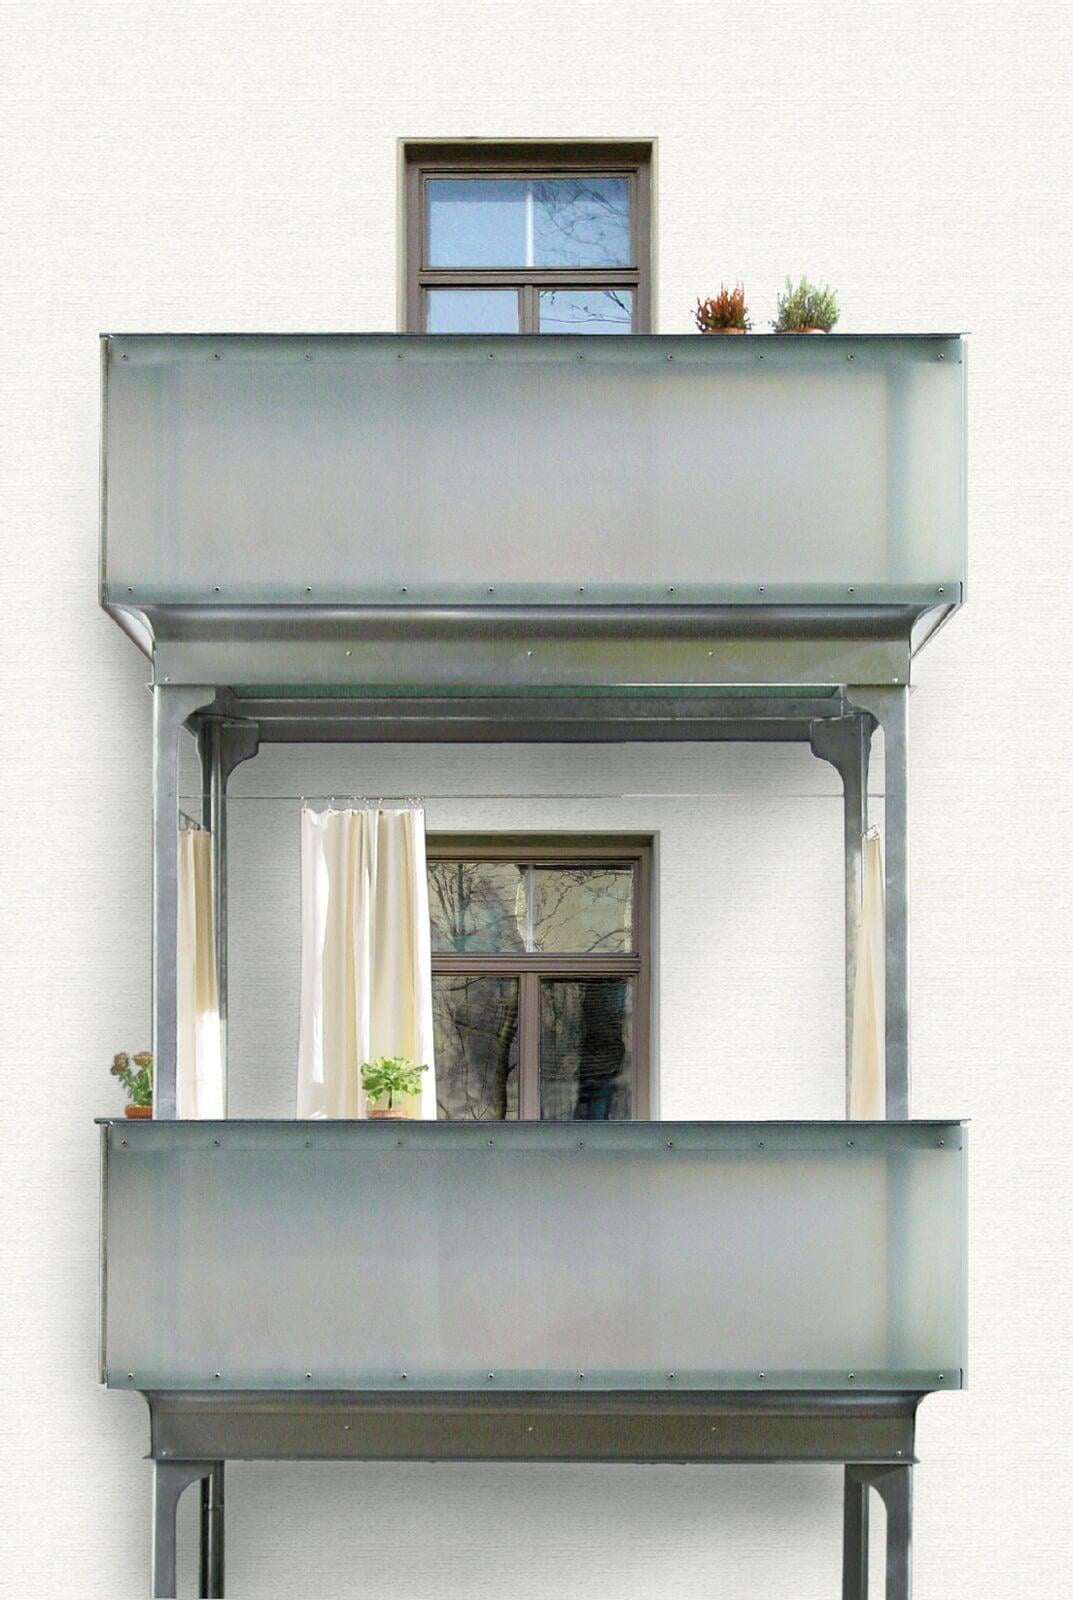 Vorstellbalkone - Balkone auf Stützen